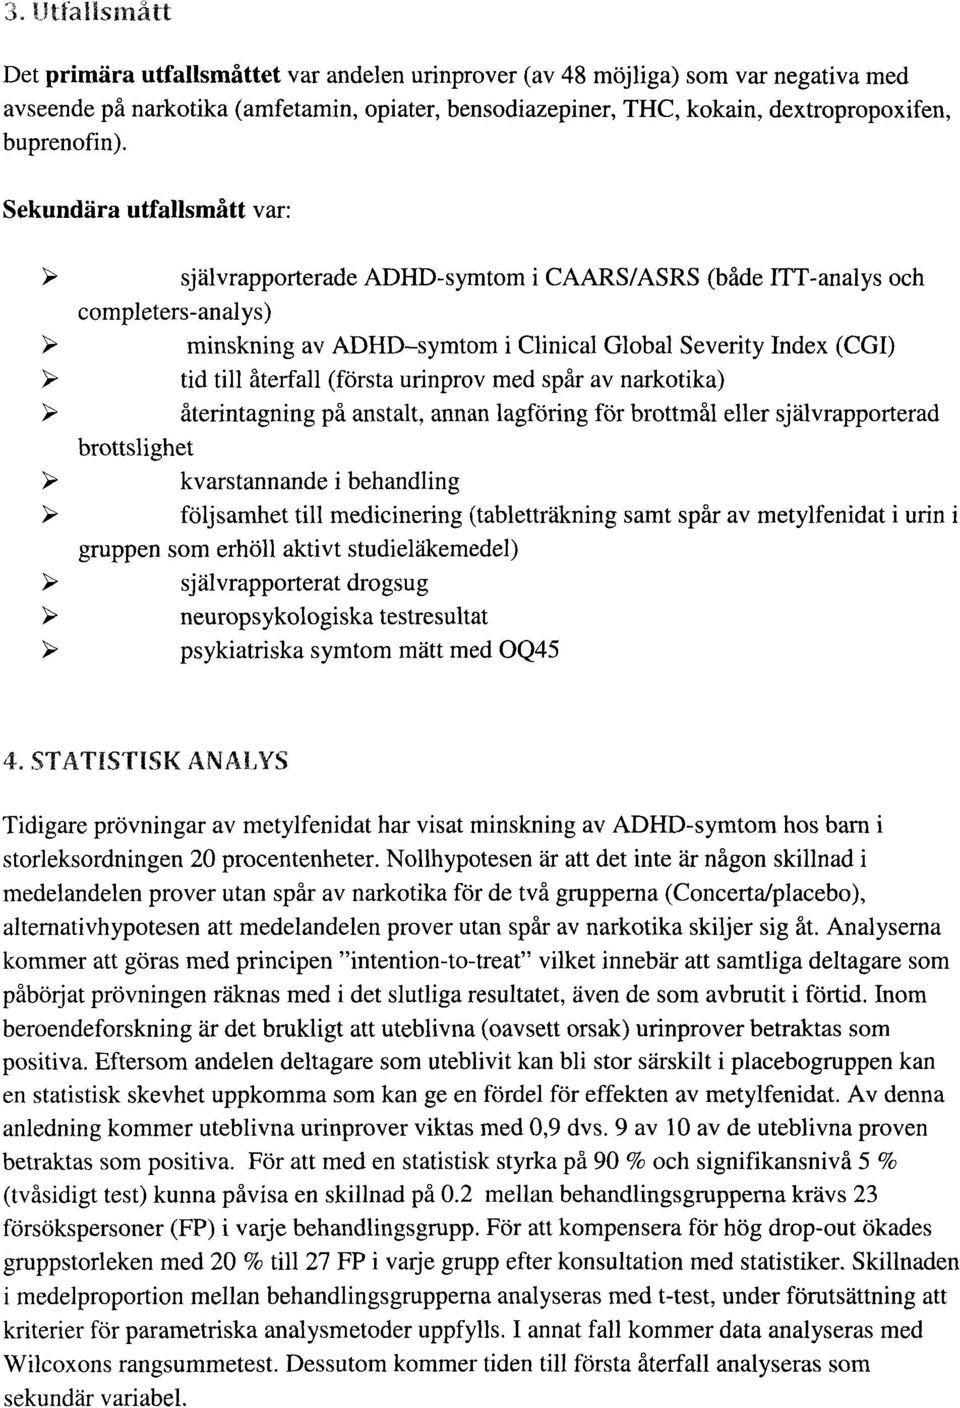 Sekundära utfallsmåttvar: självrapporterade ADHD-symtom i CAARS/ASRS (både ITT-analys och completers-analys) minskning av ADHD symtom i Clinical Global Severity Index (CGI) tid till återfall (första